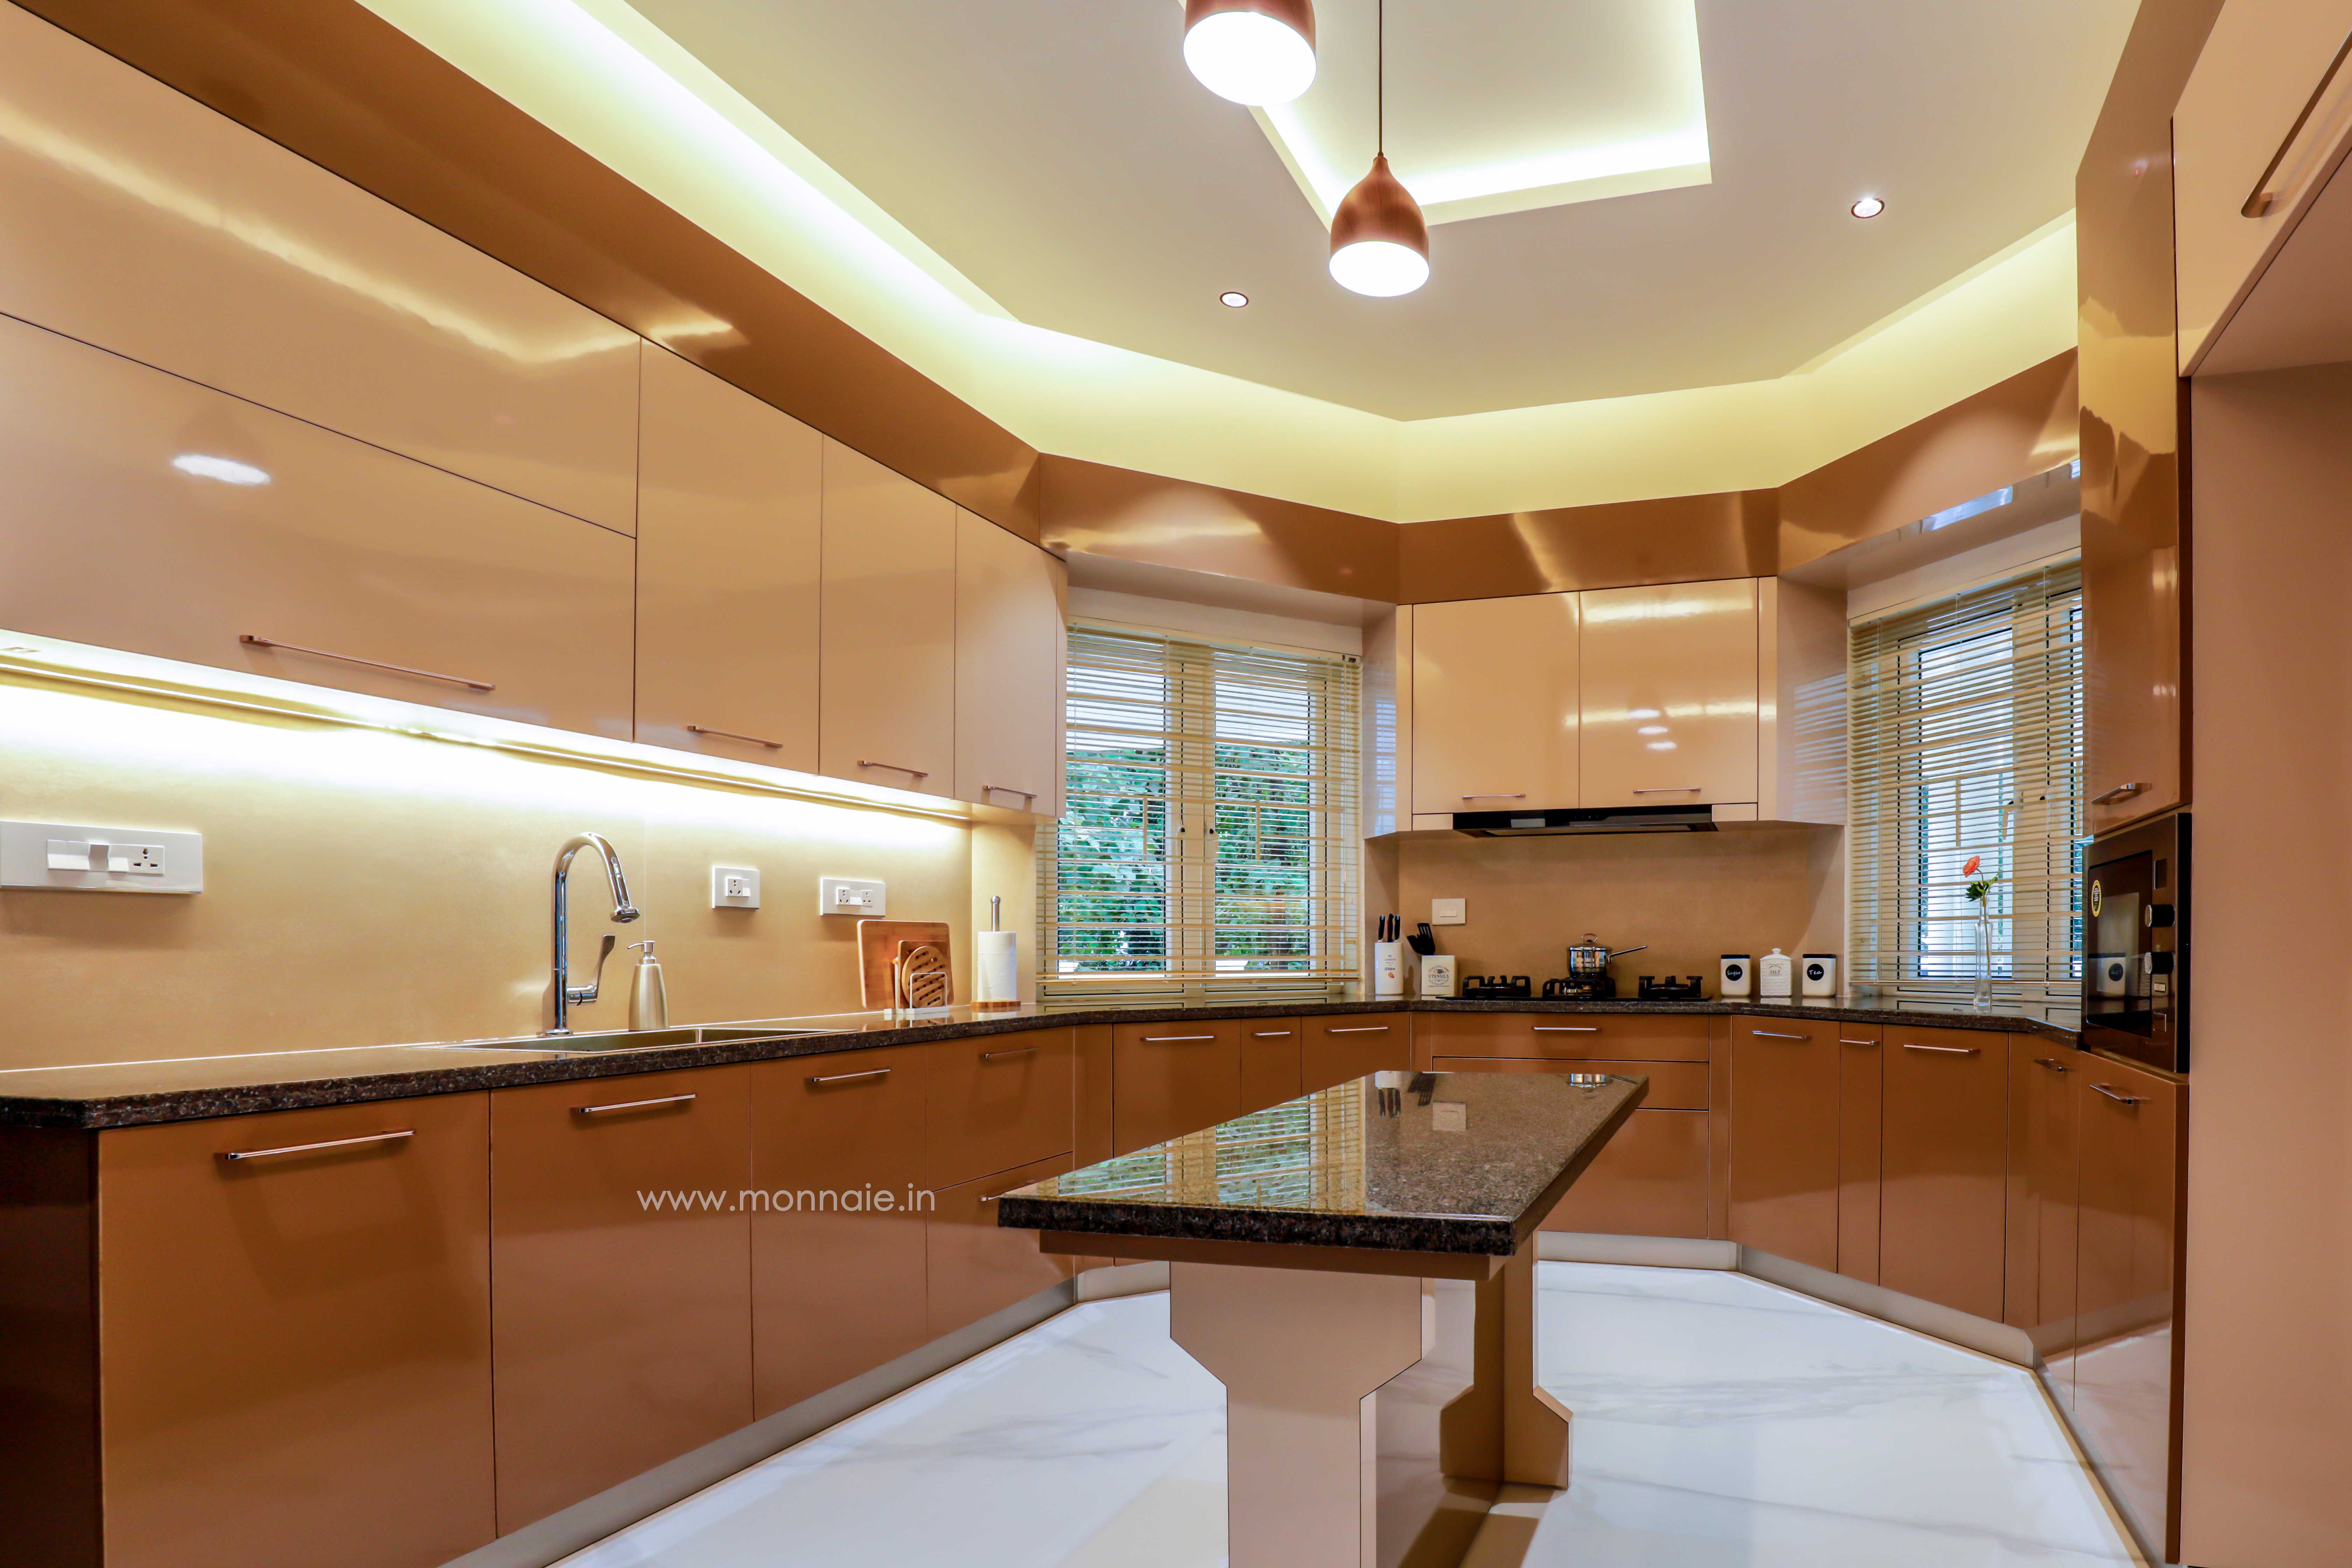 best modular kitchen design